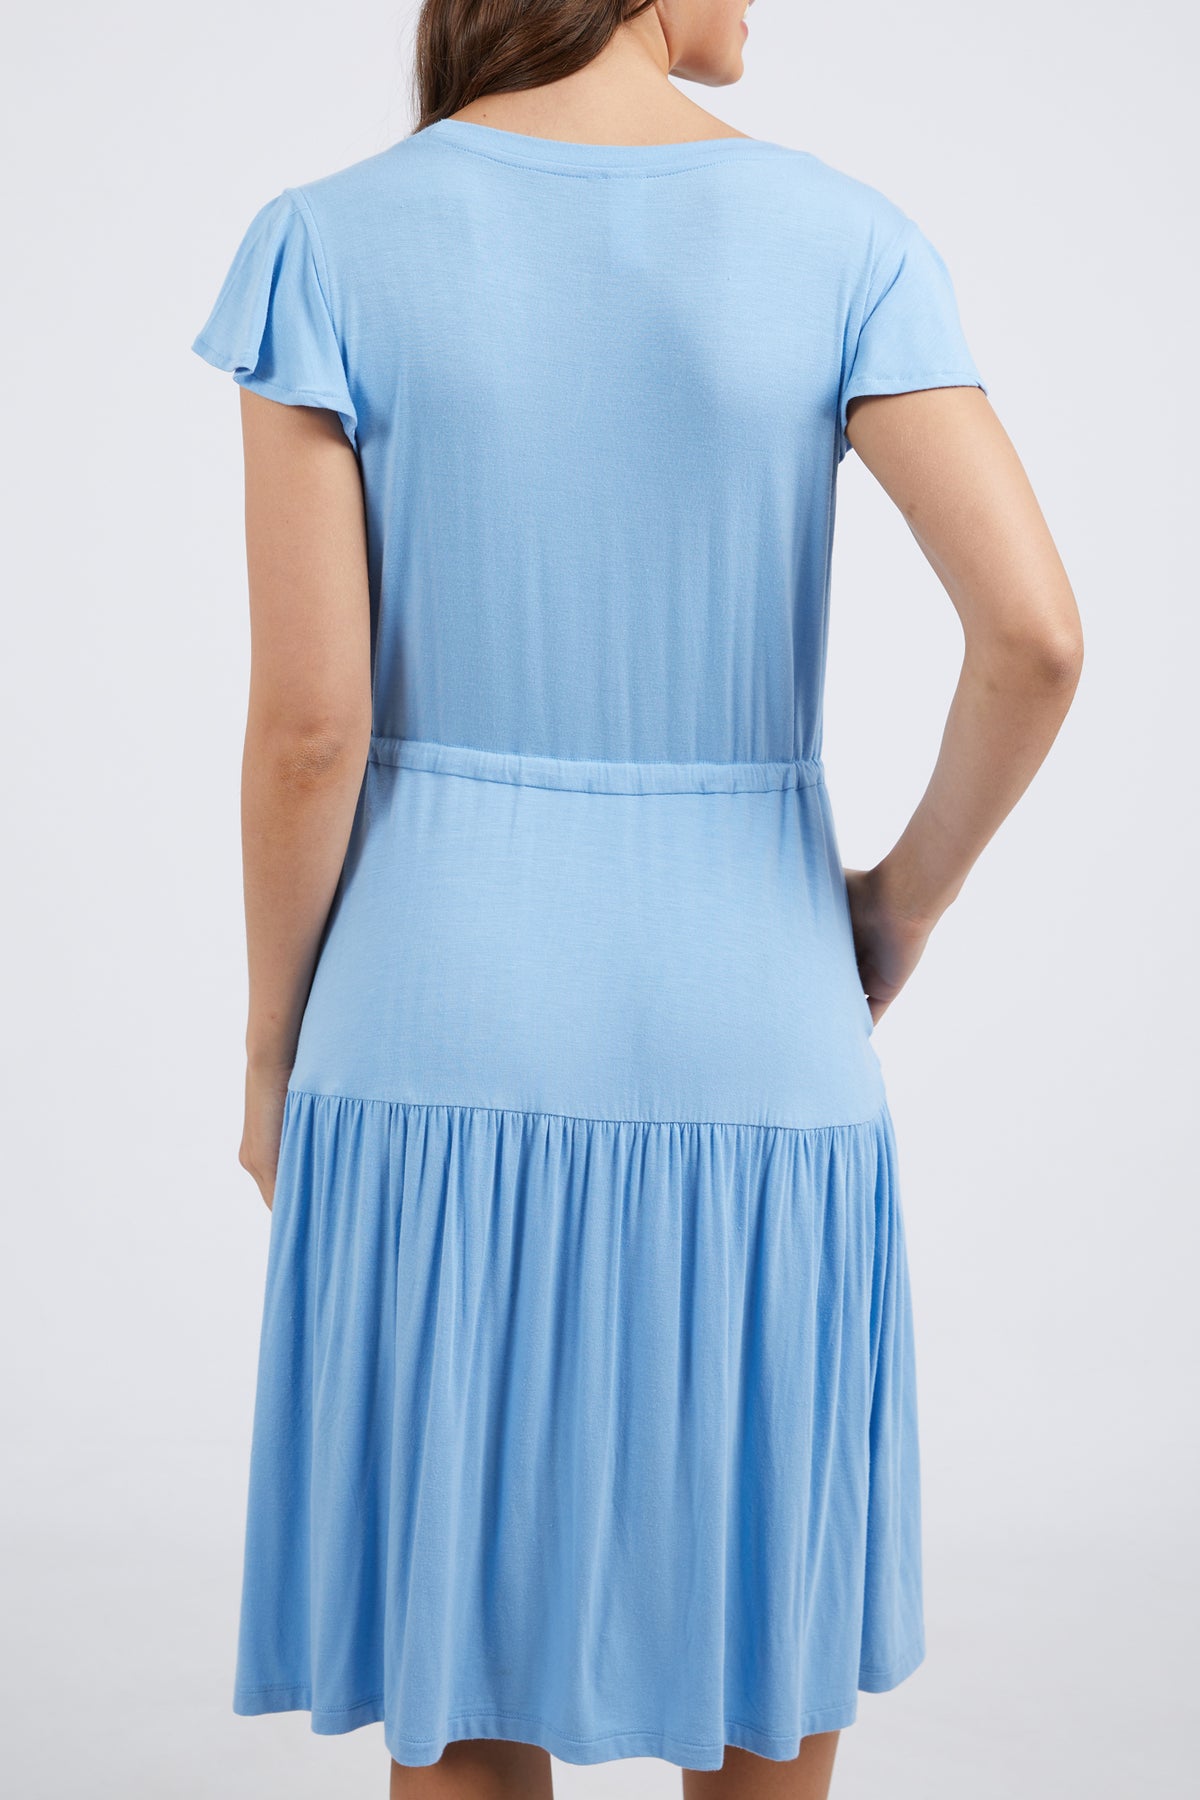 Priya Dress Azure Blue